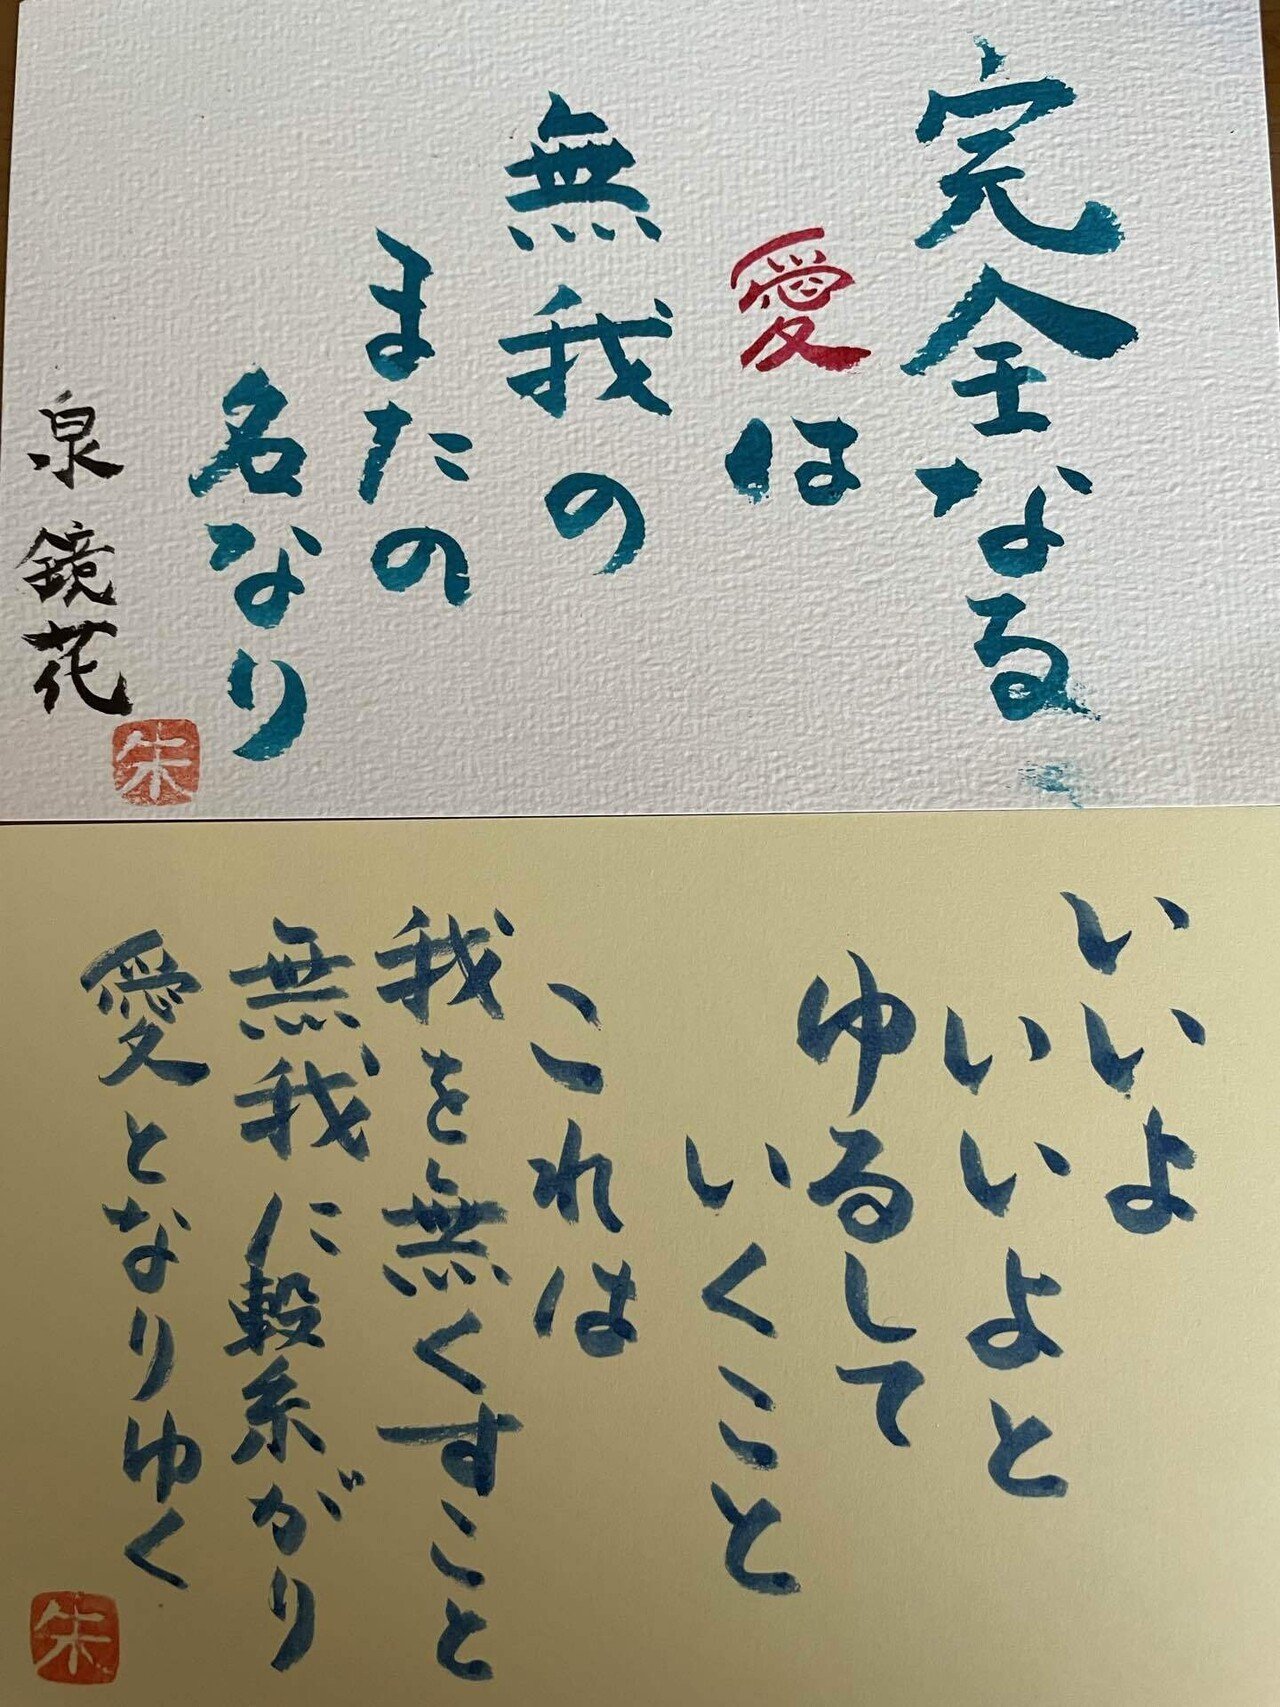 今日は金沢の文豪 泉鏡花 の誕生日 写真の名言と今日 11月4日の語呂合わせ いいよ から浮かんだ言葉です いいよって やさしく言える日にしよう 今日誕生日の偉人の名言 泉鏡花 愛の月 あみ Note